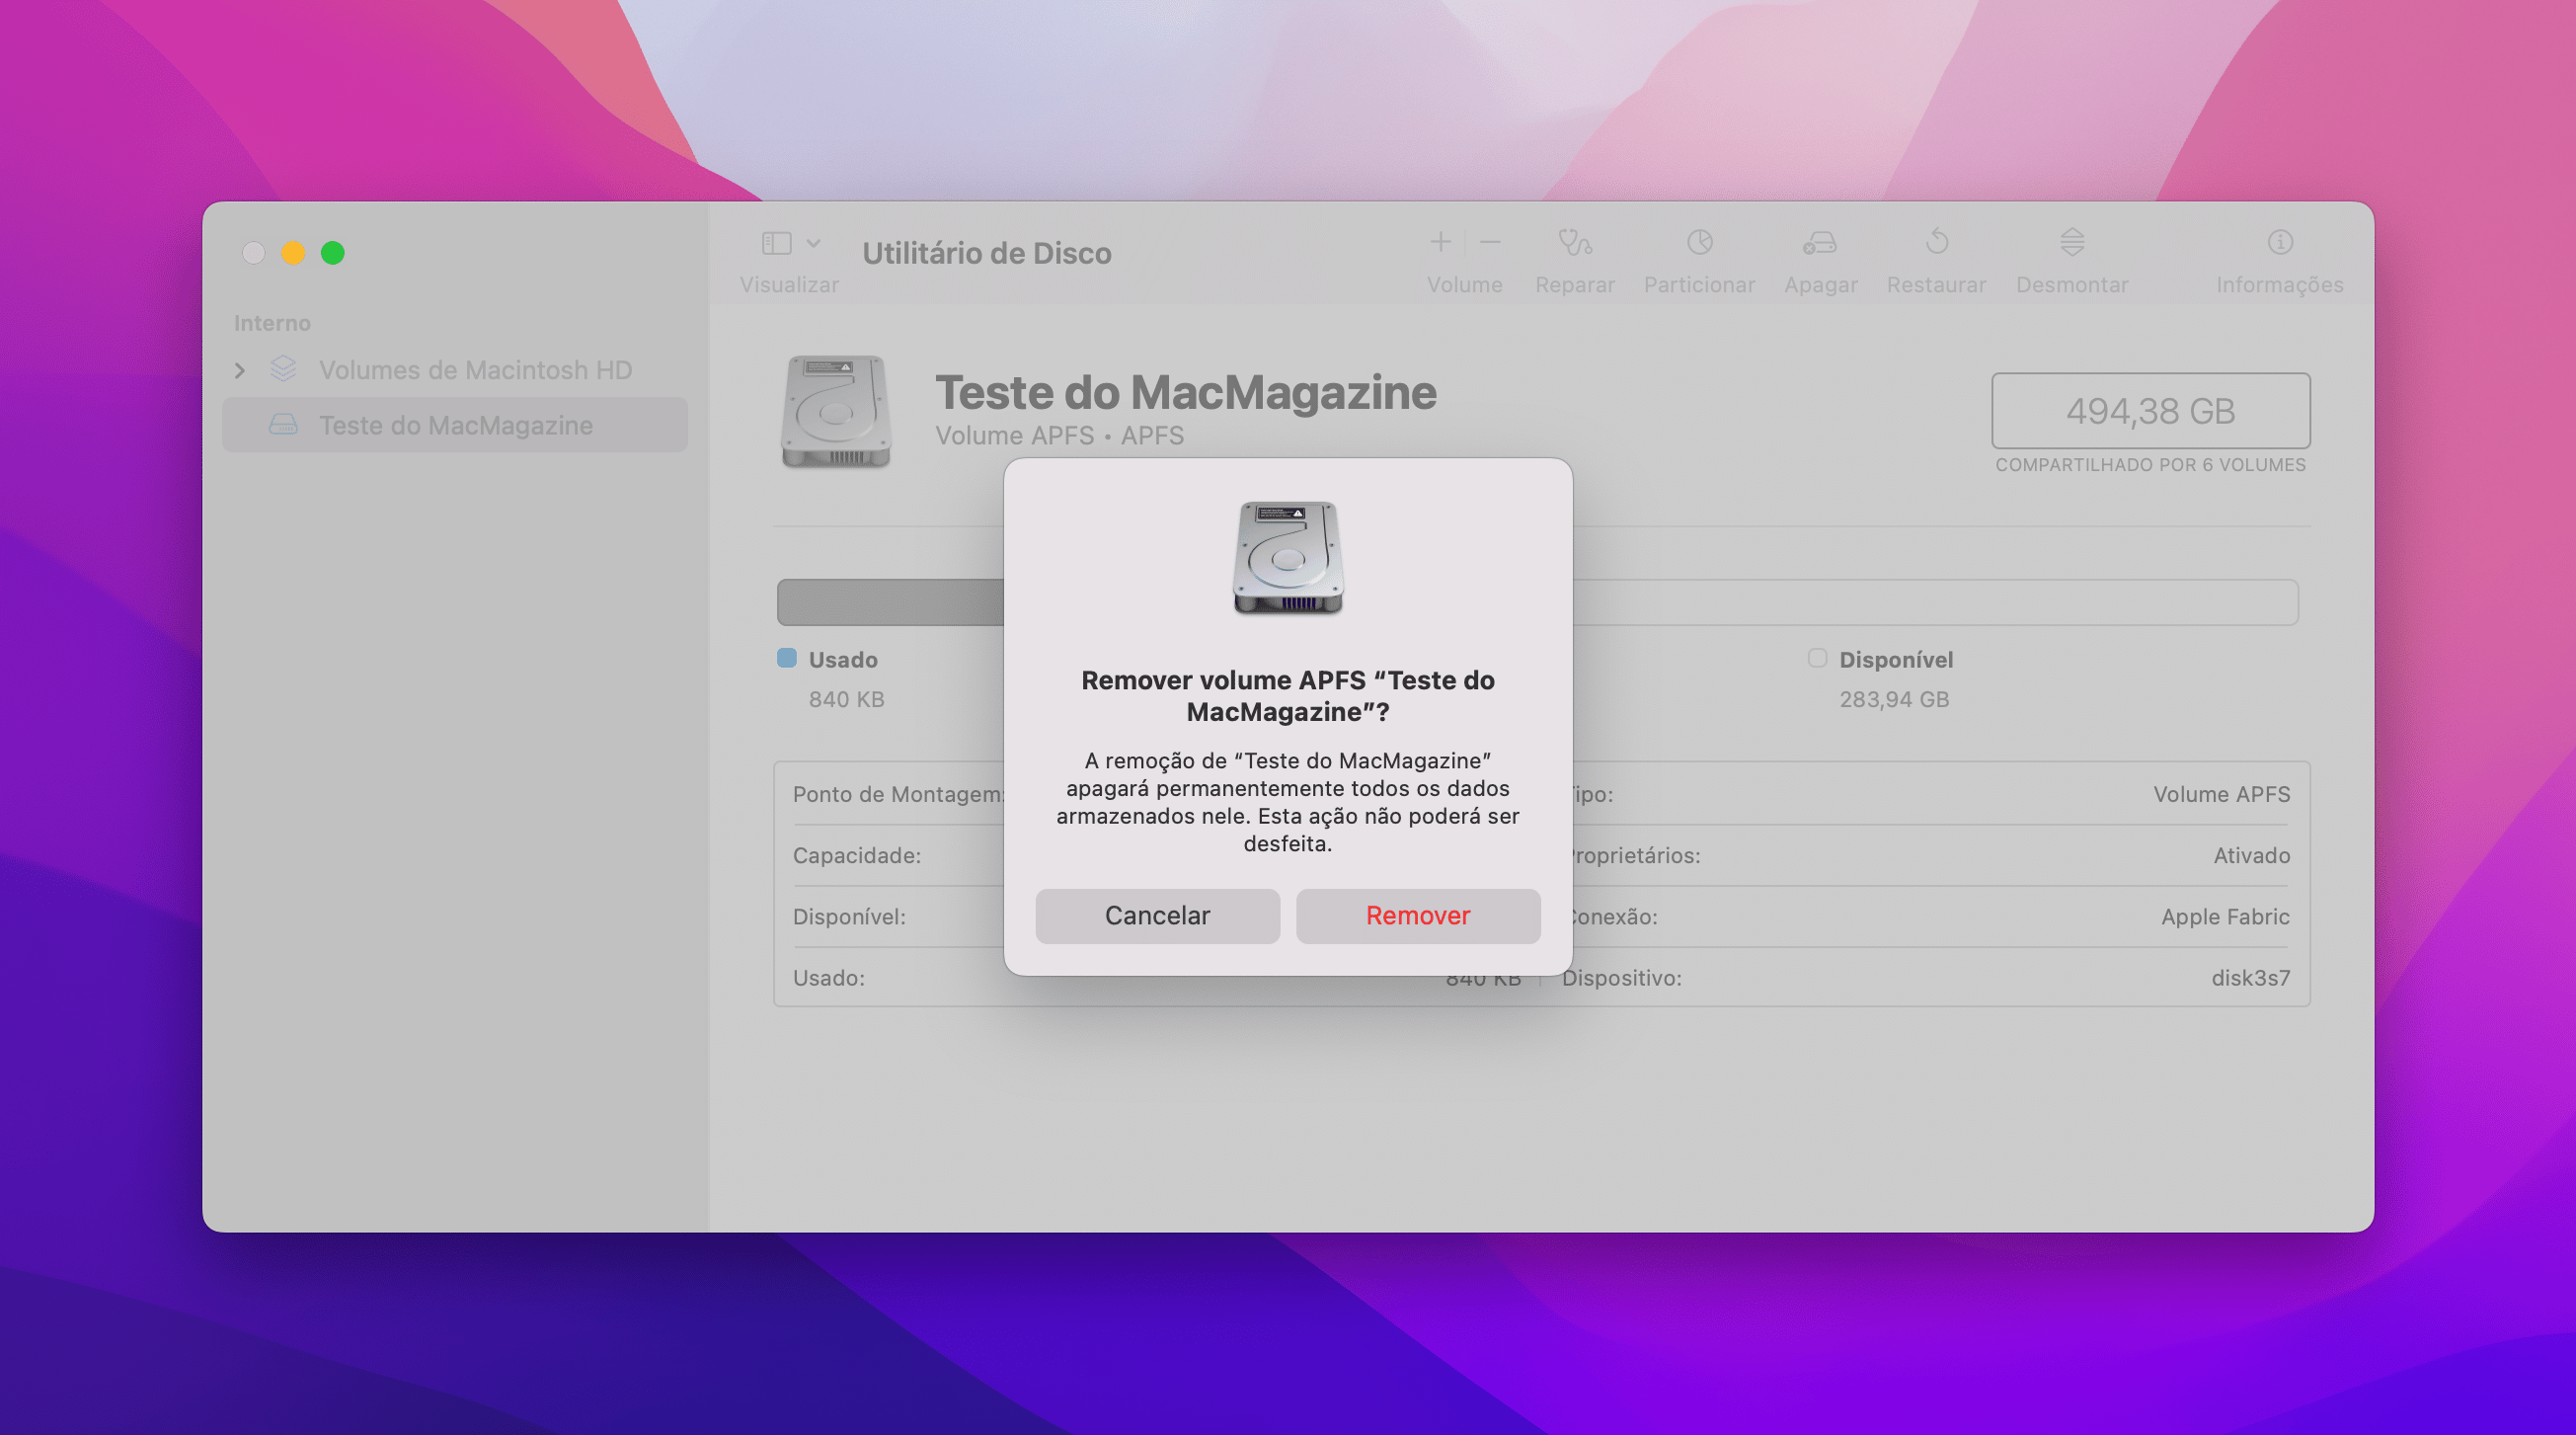 Criando novos volumes no Utilitário de Disco do macOS Monterey